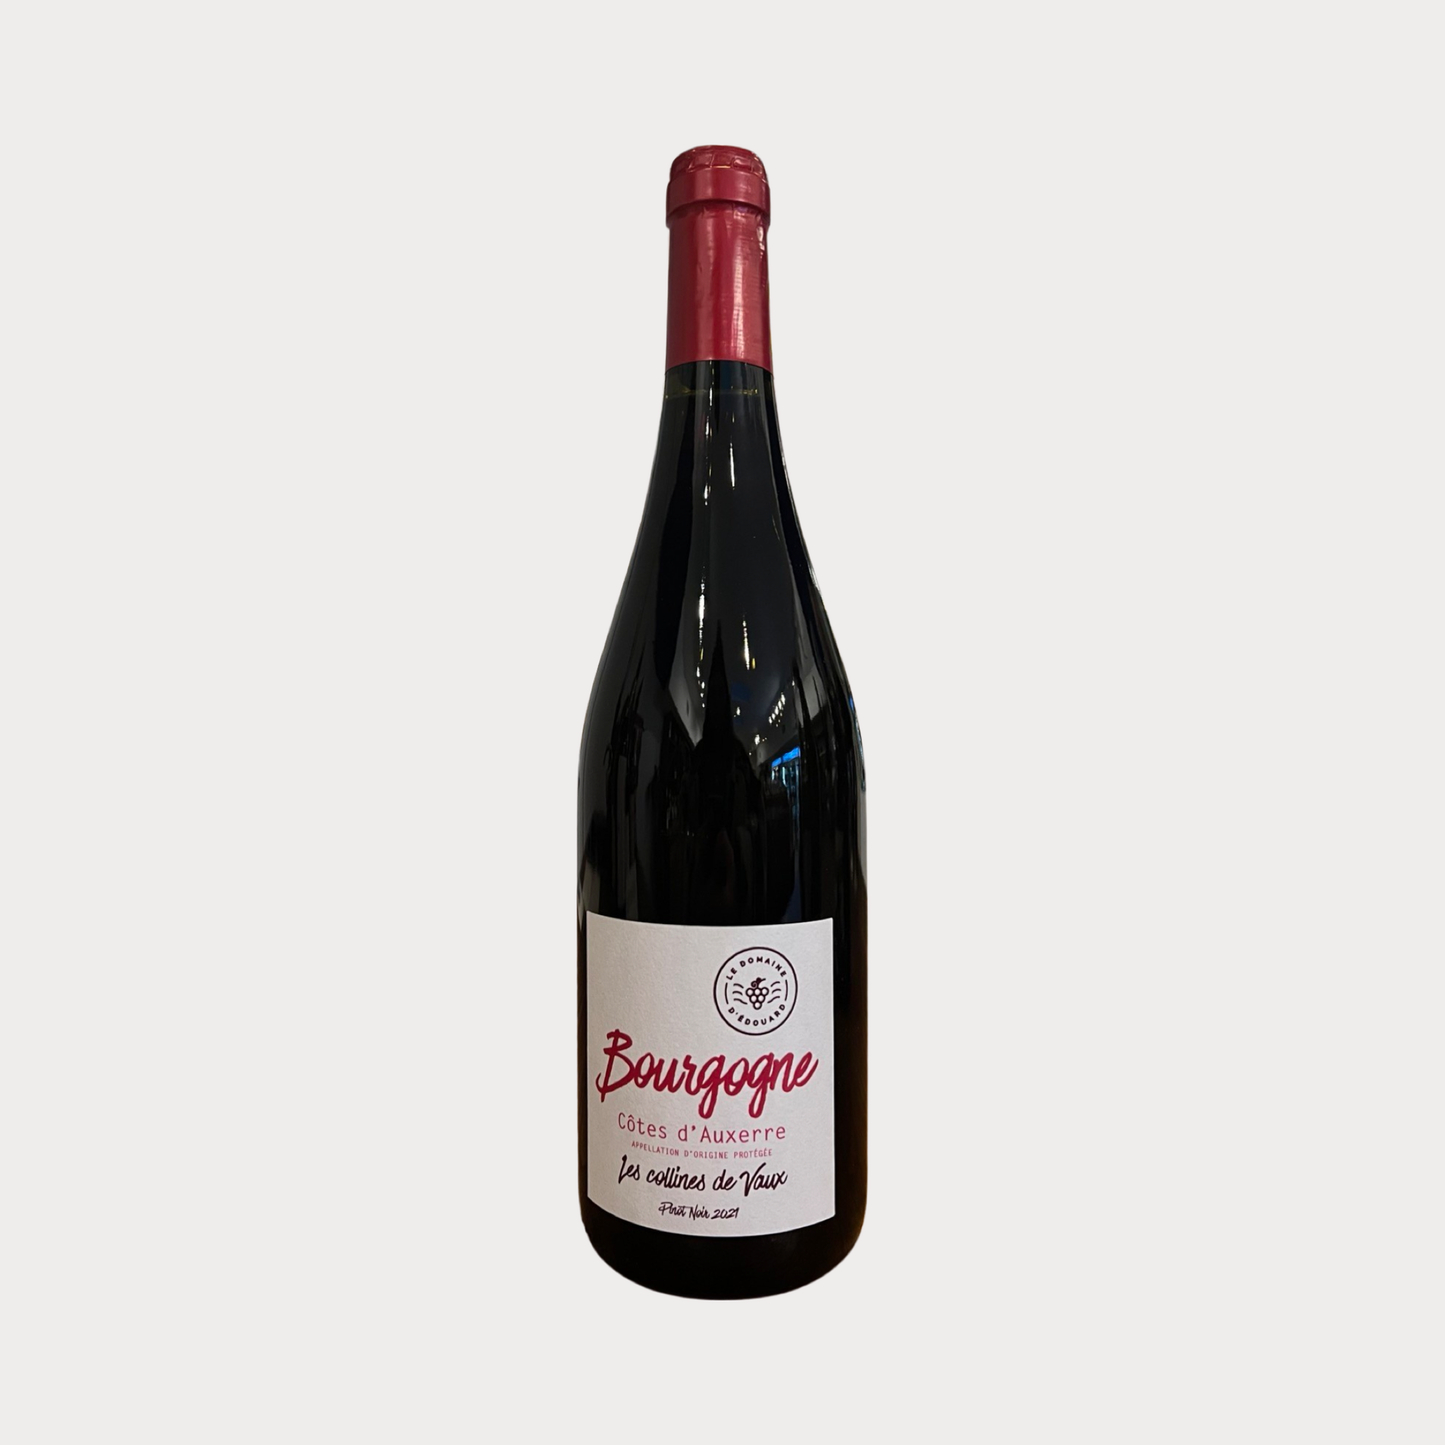 2021 Domaine d'Edouard Bourgogne Cote d'Auxerre Pinot Noir